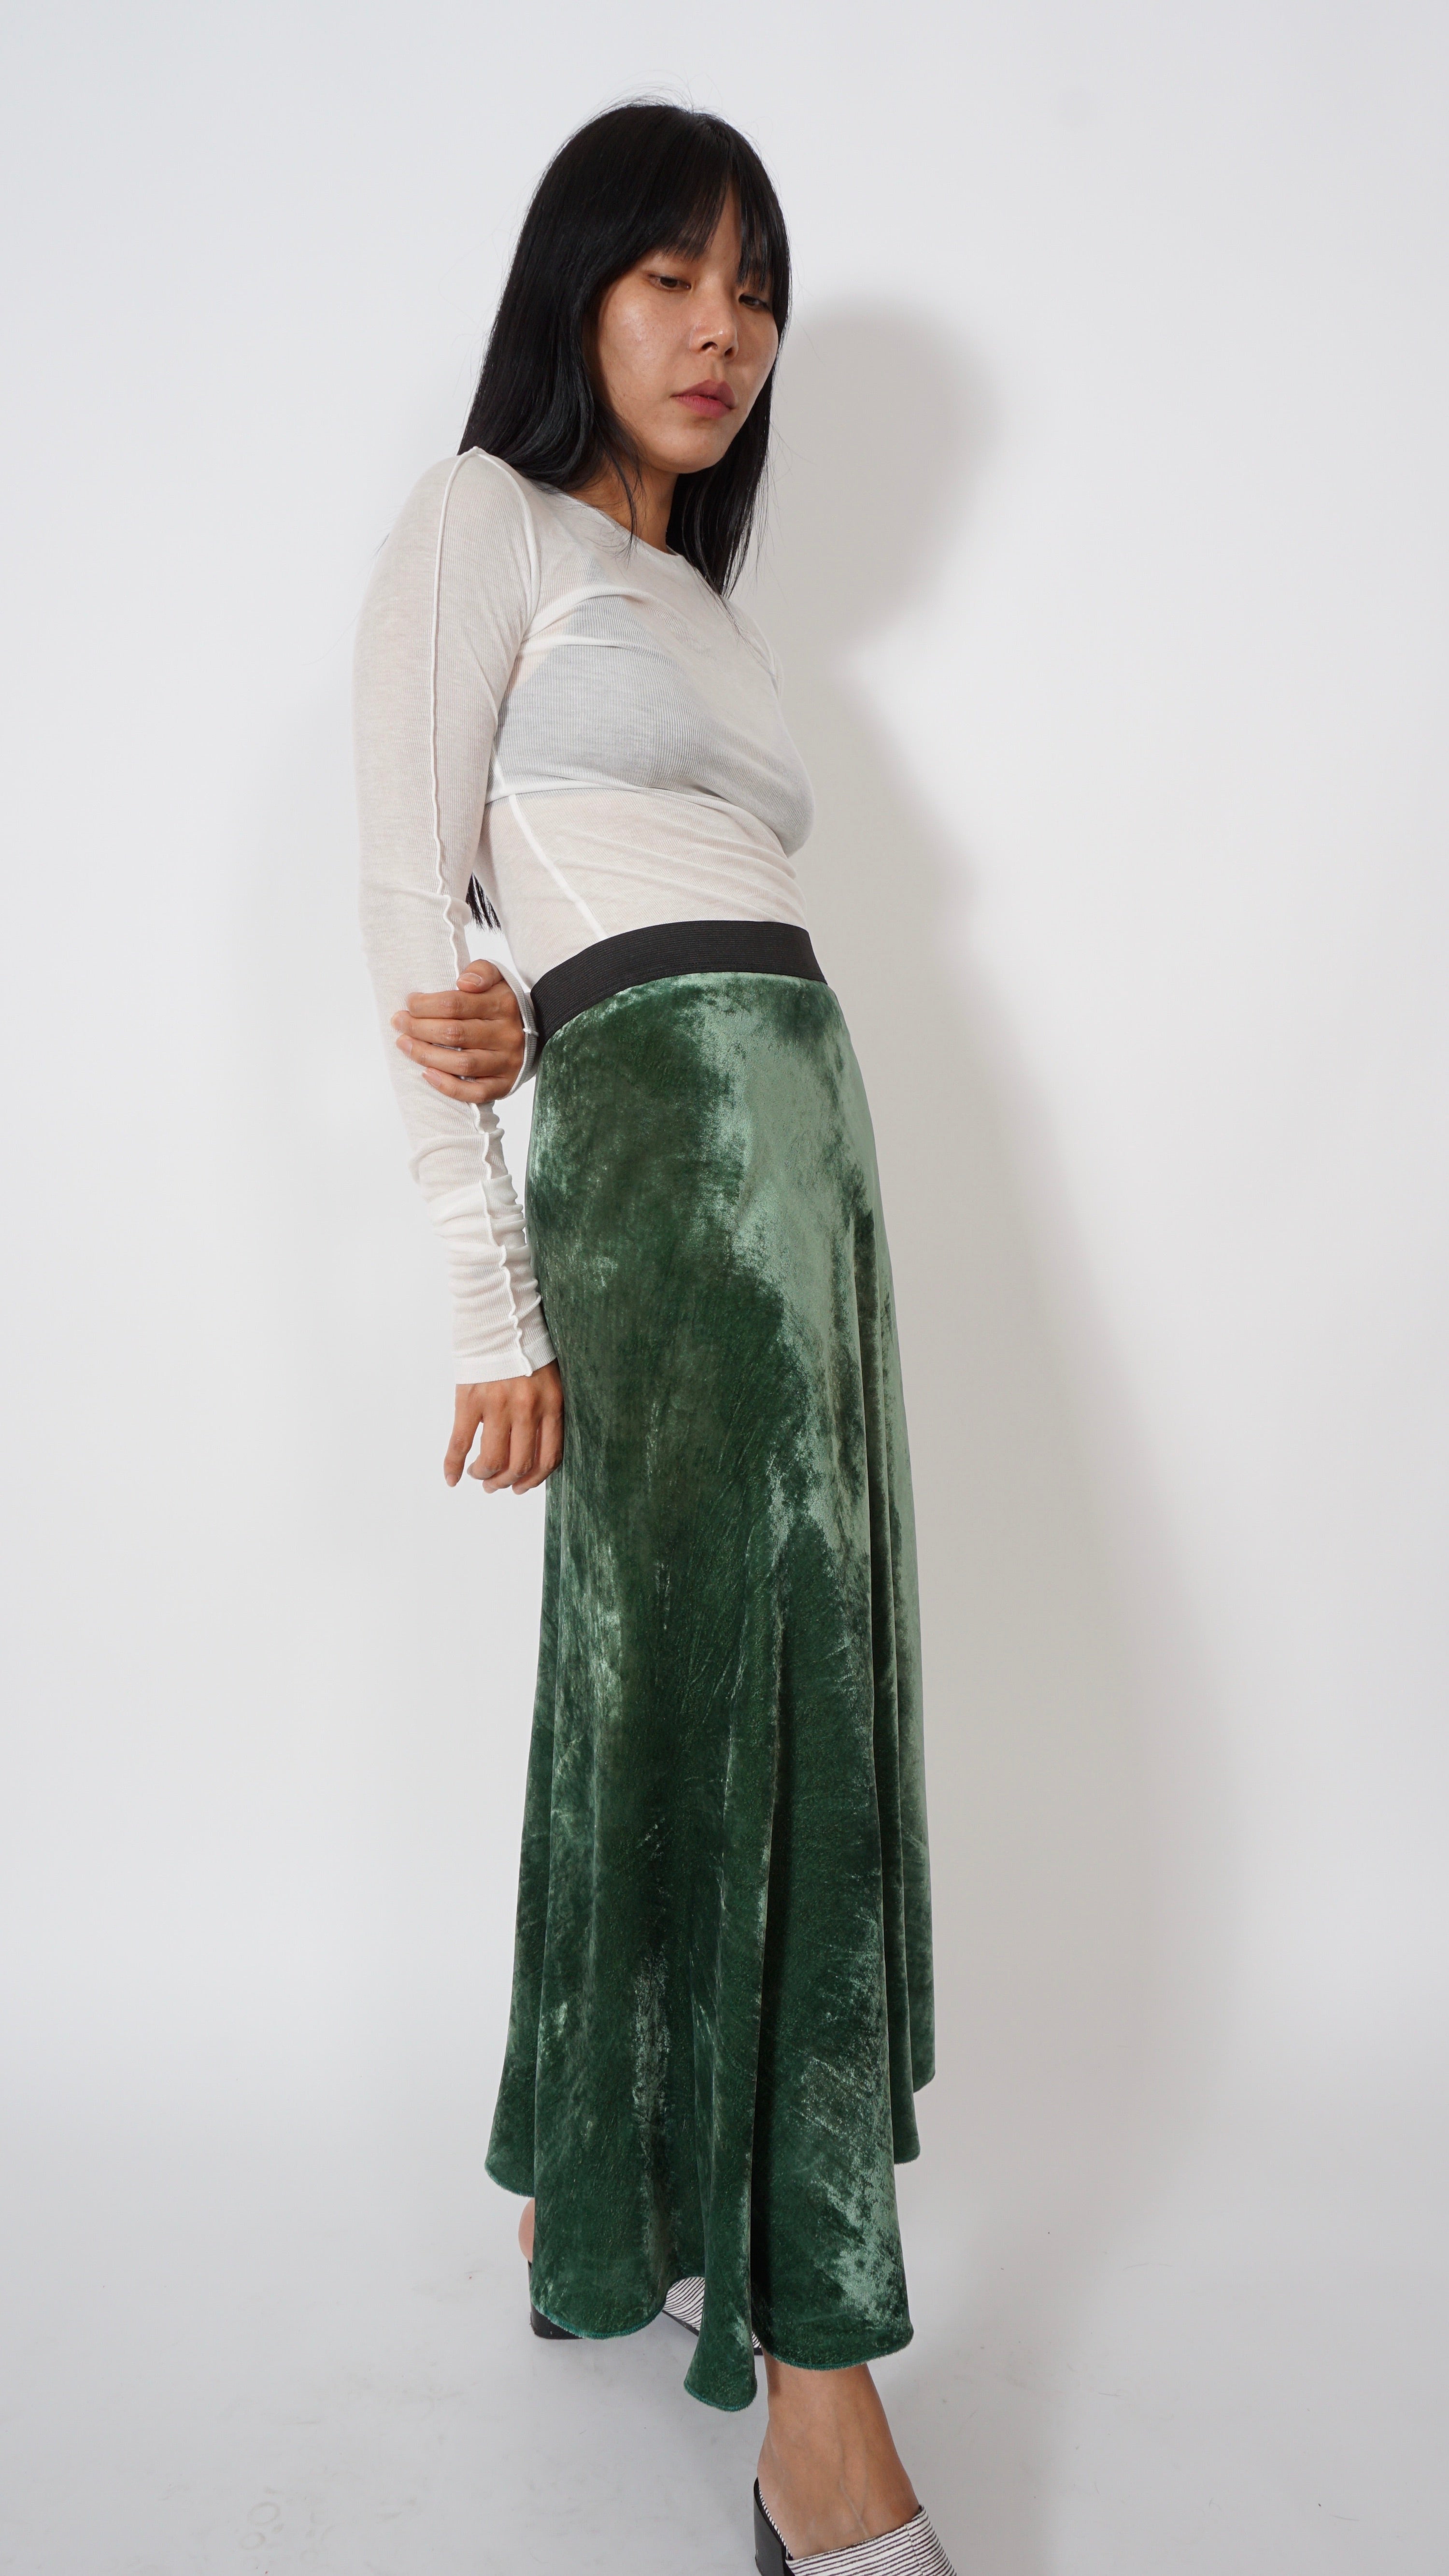 Velvet skirt by Sabine Poupinel